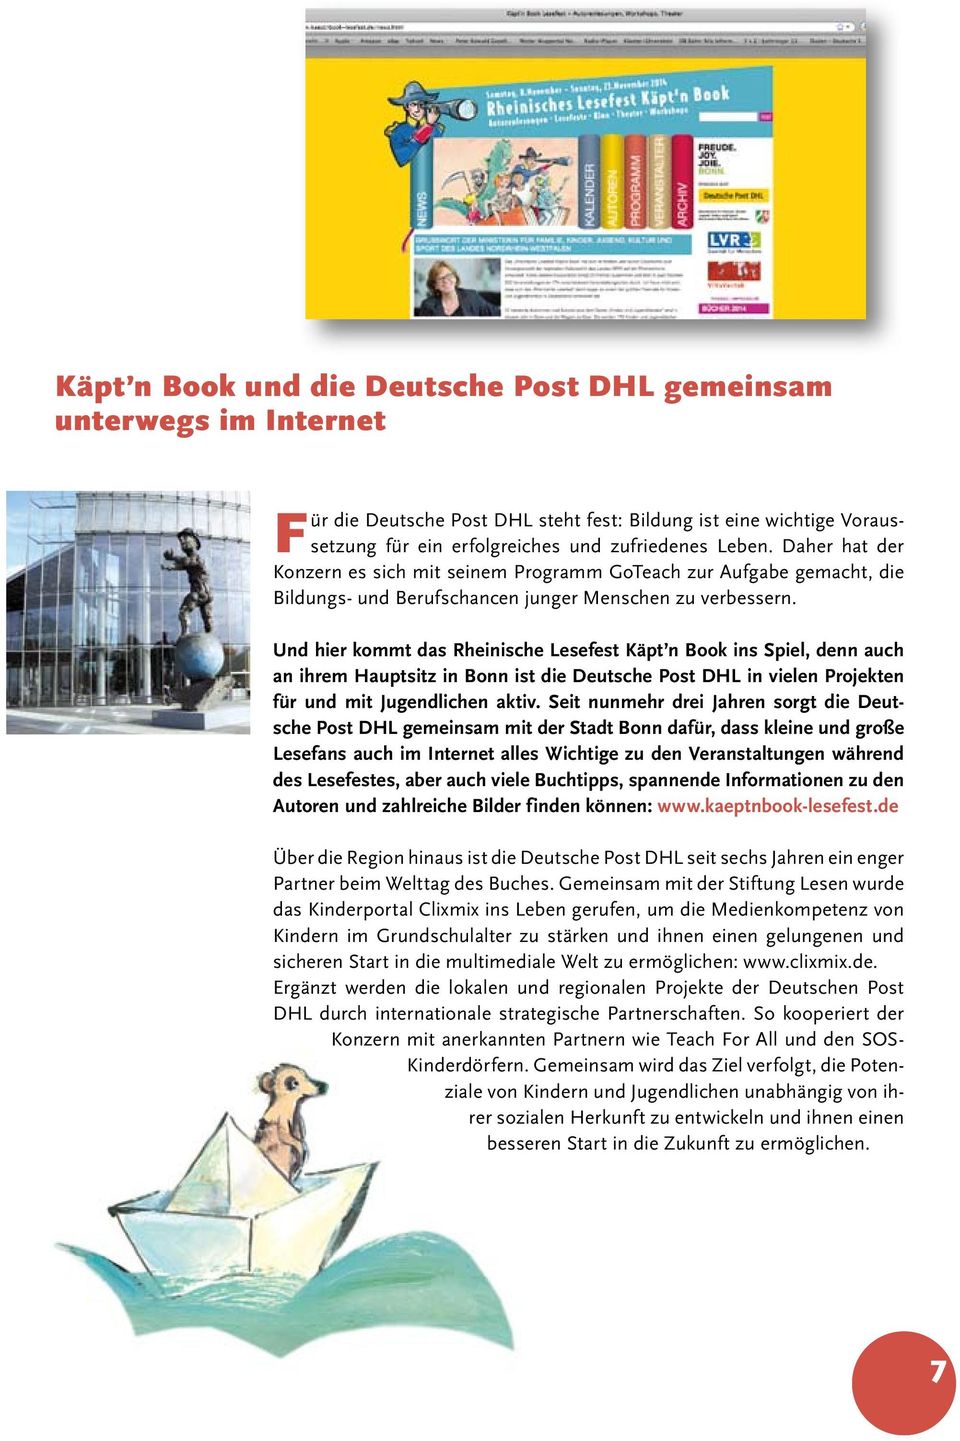 Und hier kommt das Rheinische Lesefest Käpt n Book ins Spiel, denn auch an ihrem Hauptsitz in Bonn ist die Deutsche Post DHL in vielen Projekten für und mit Jugendlichen aktiv.